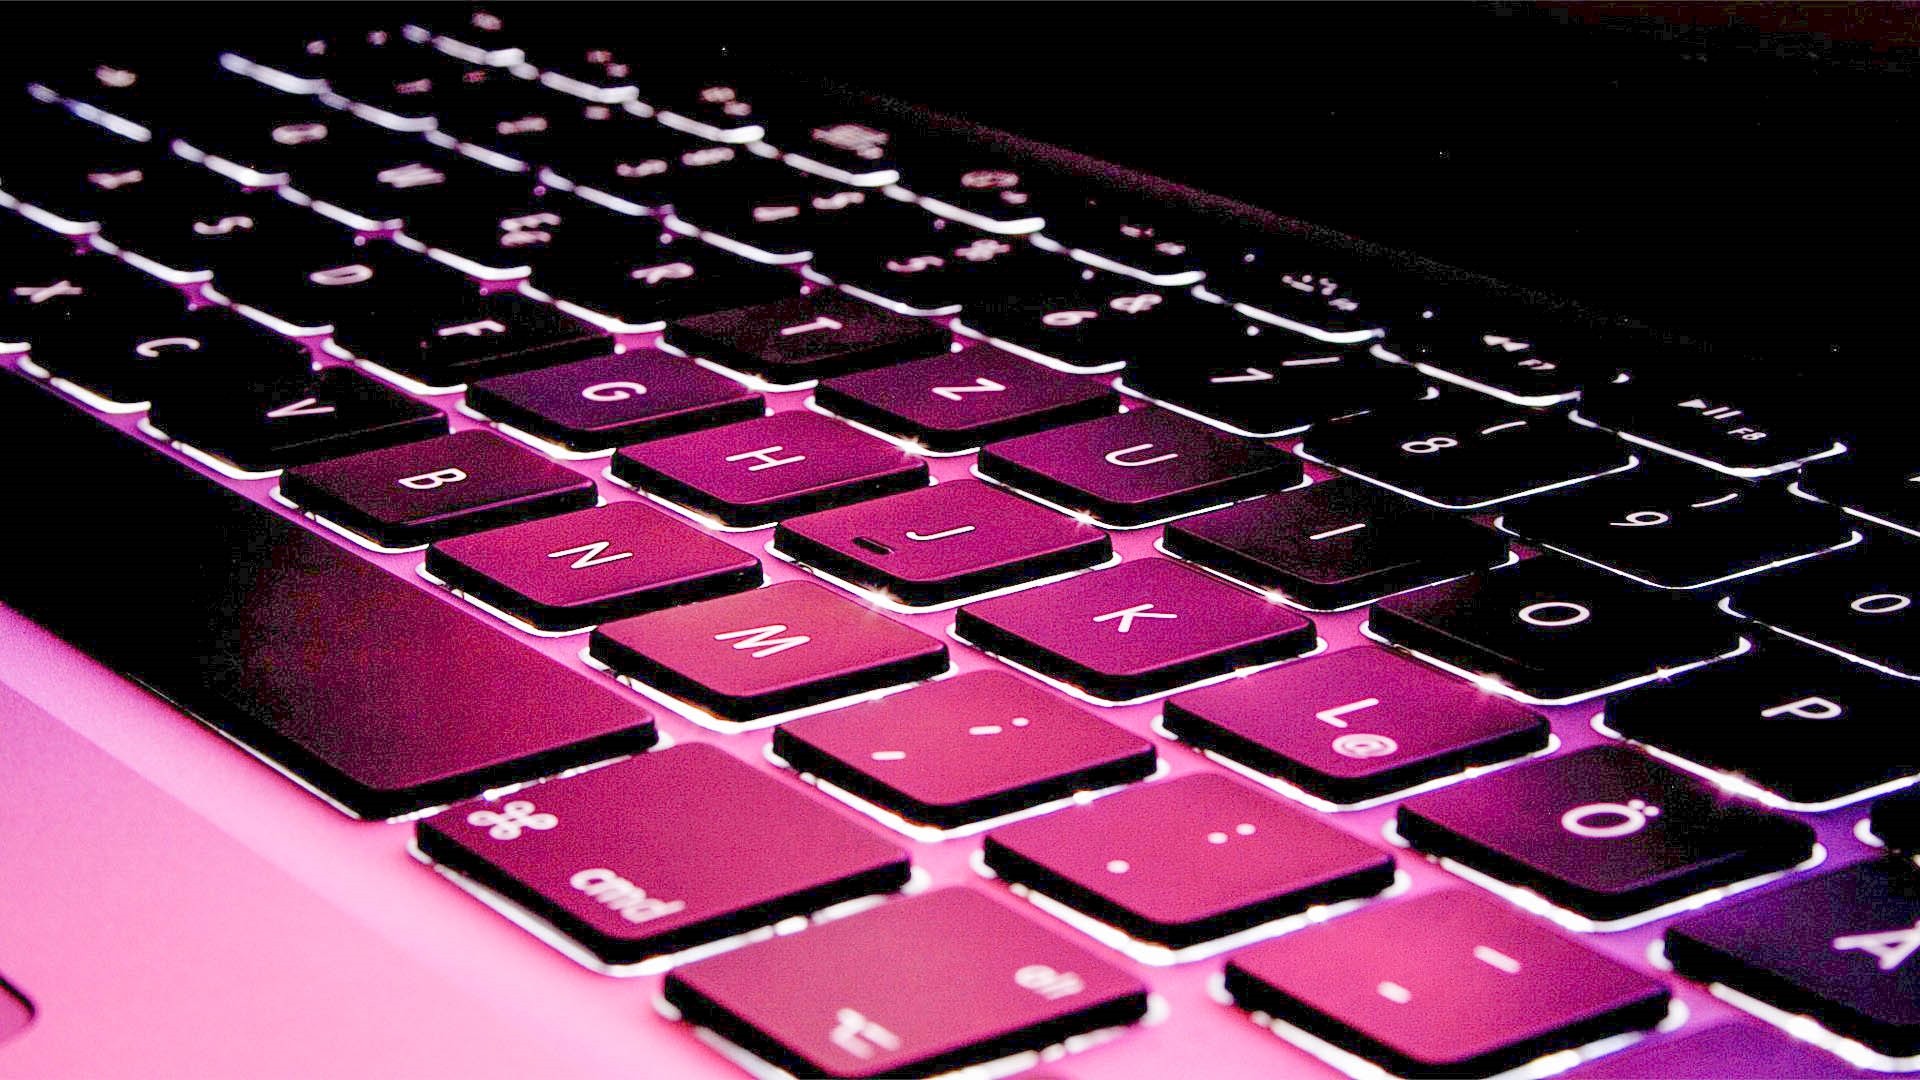 Keyboard hd desktop wallpaper